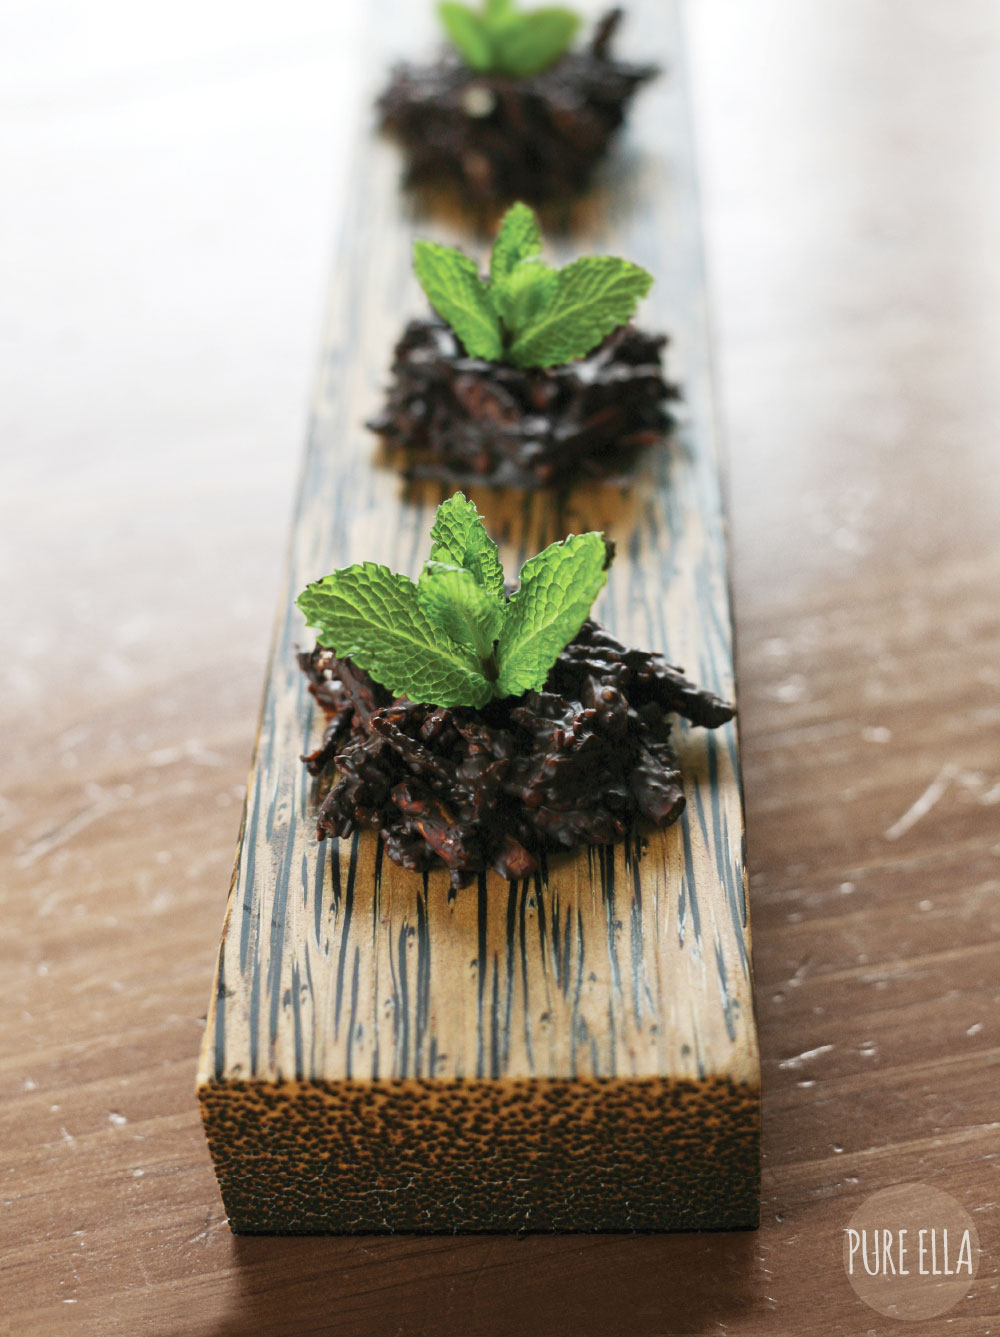 Pure-Ella-Sweet-Seedlings-with-chocolate-dirt8